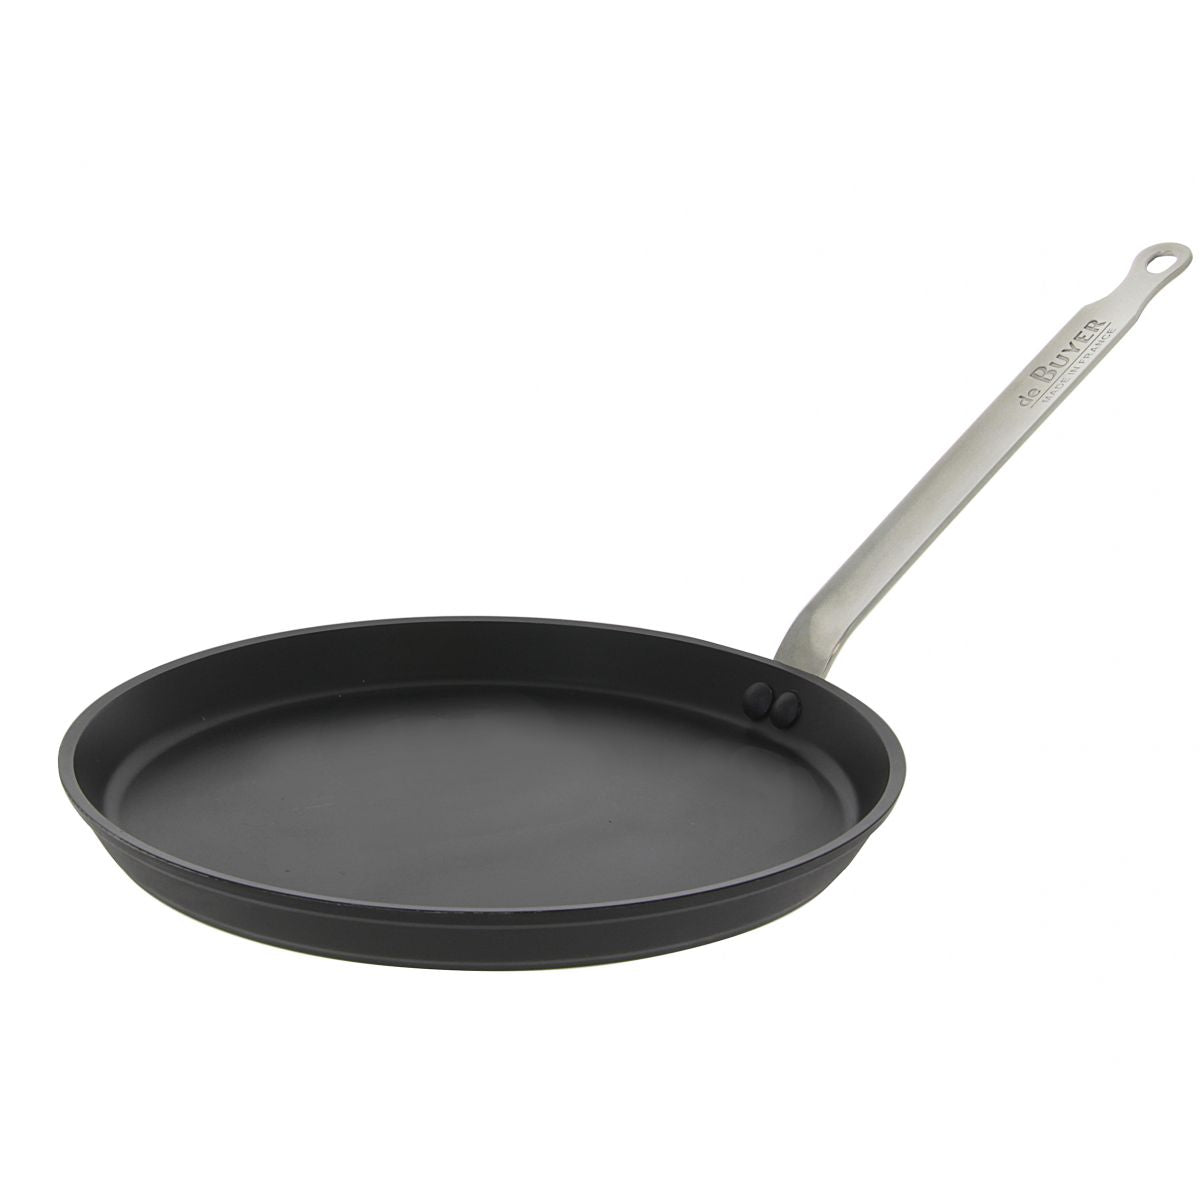 De Buyer Choc intense Removable Non-Stick Crepe Pan